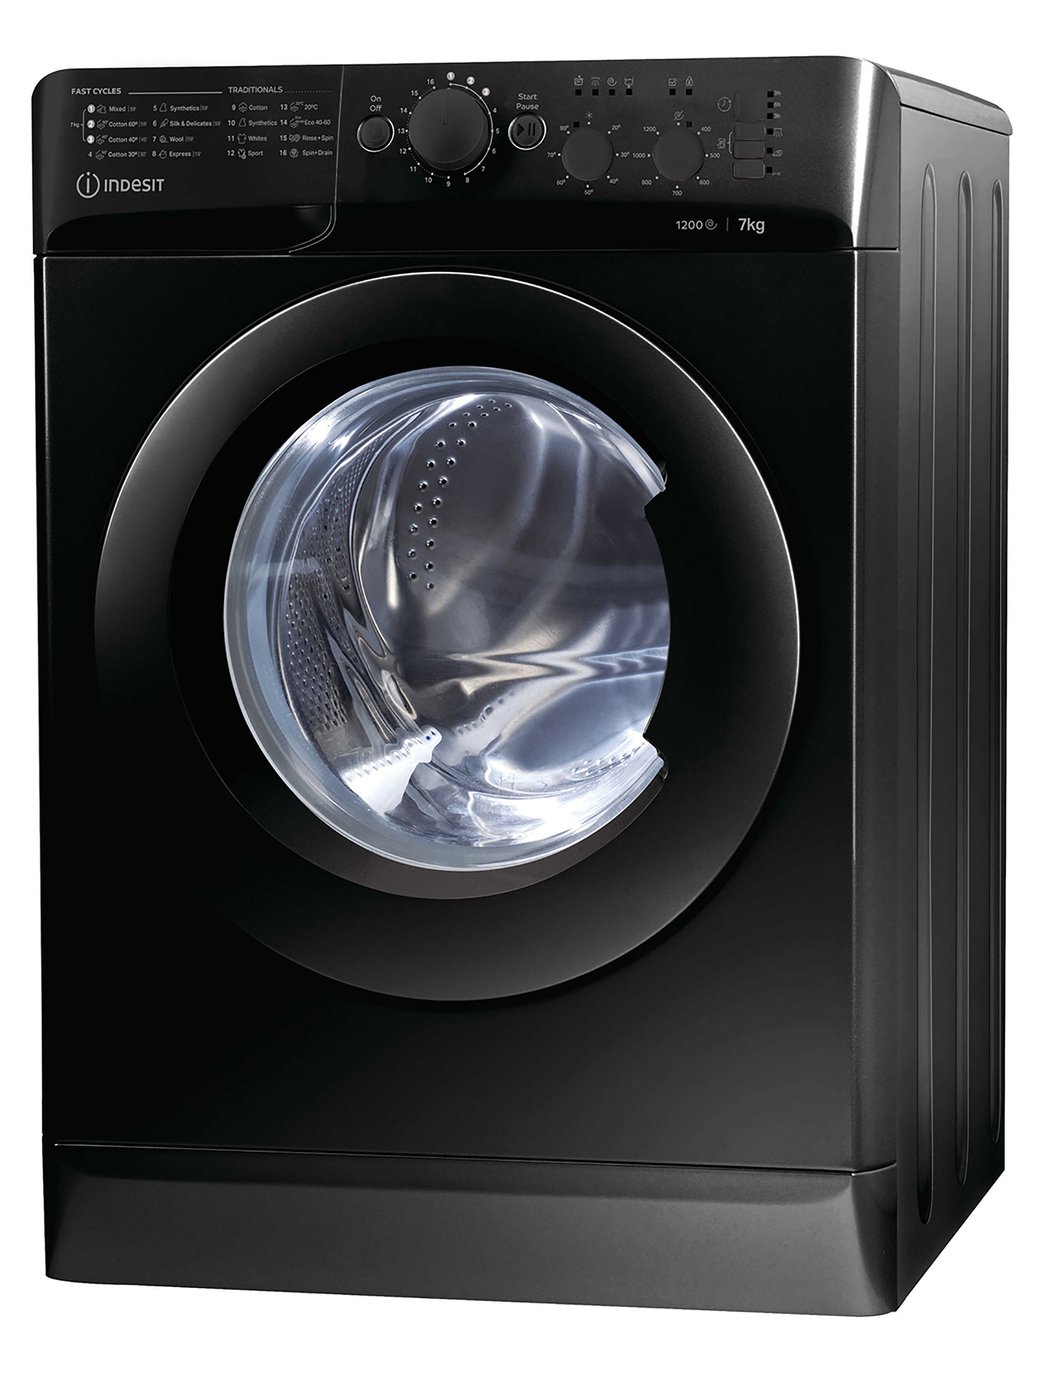 eco spin washing machine